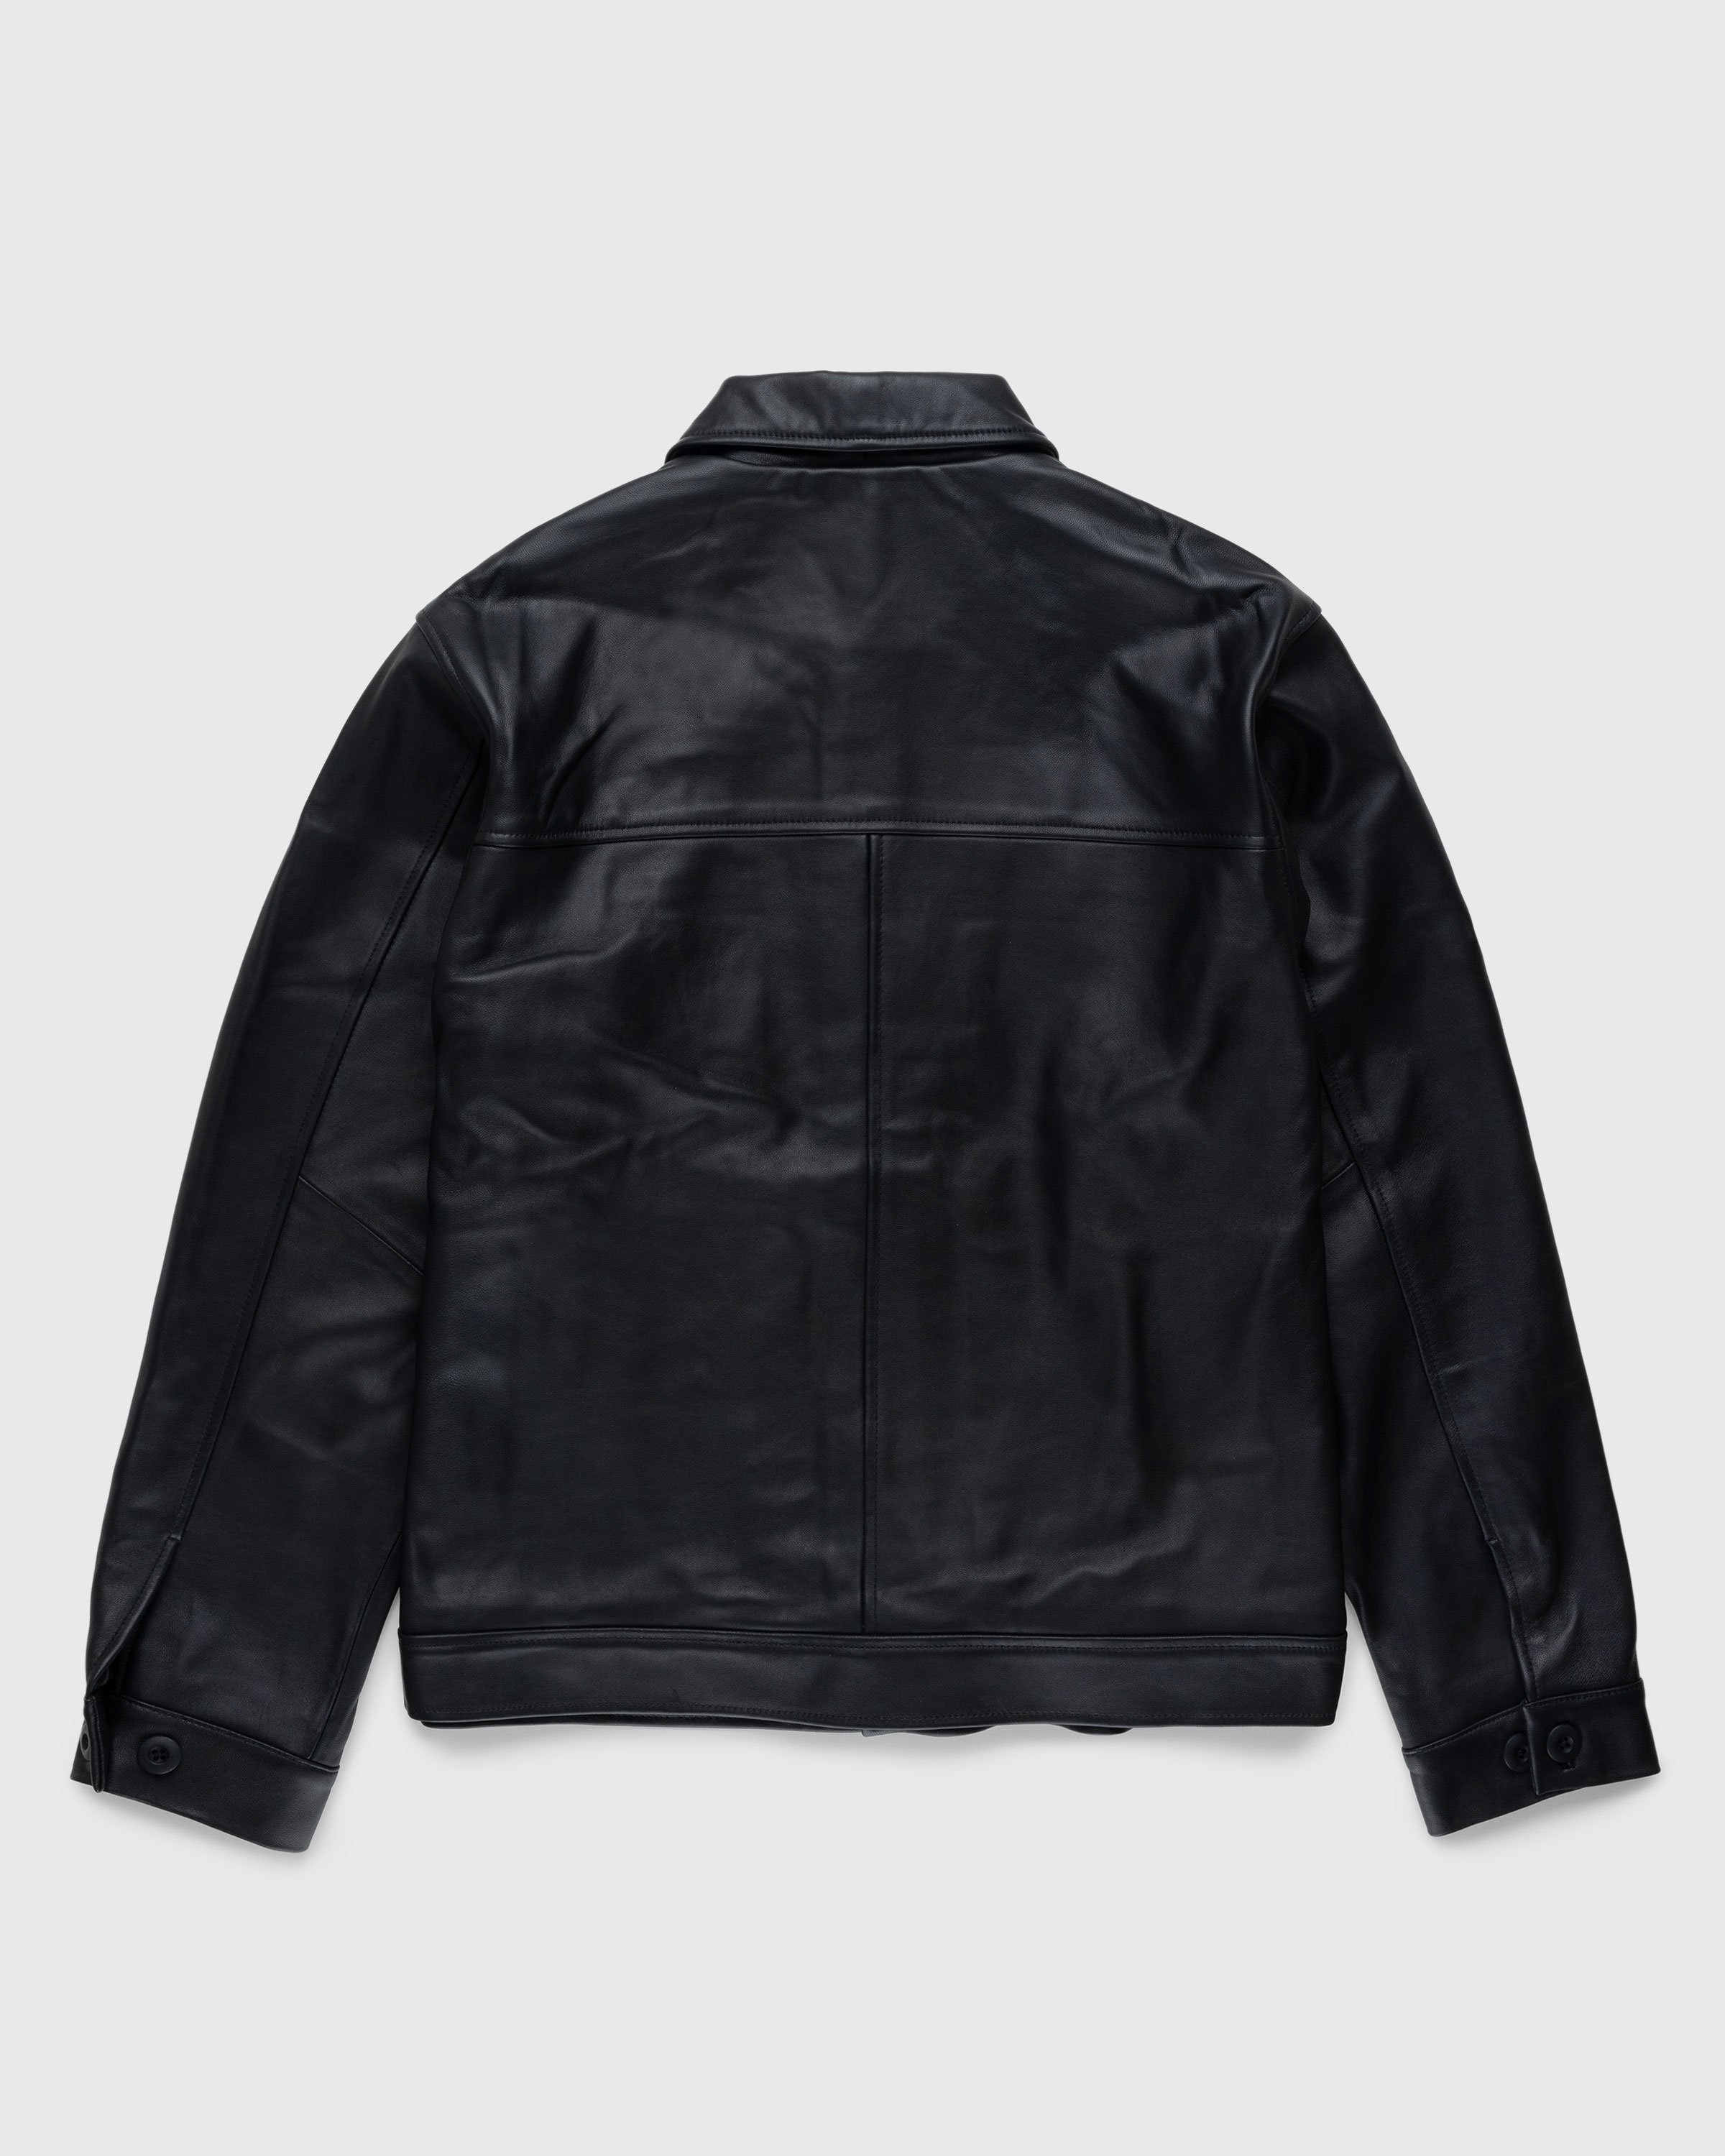 Highsnobiety HS05 - Leather Jacket Black - Clothing - Black - Image 2